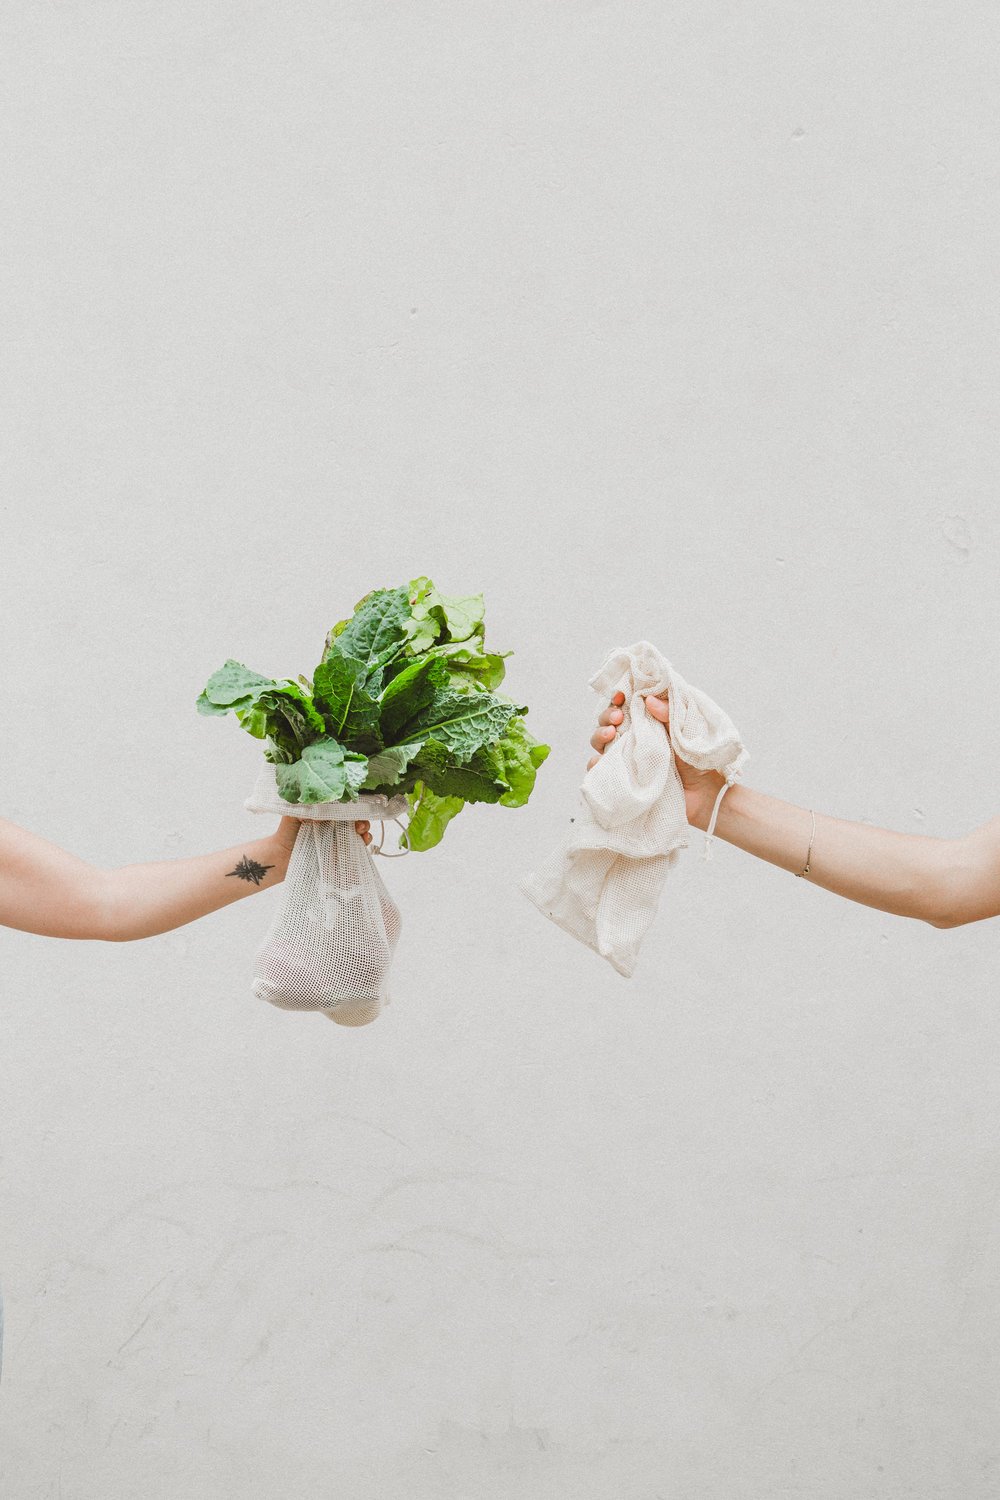 Las bolsas de tela son perfectas para comprar verduras y conservarlas en casa. Cada vez más empresas apuestan por este tipo de consumo.